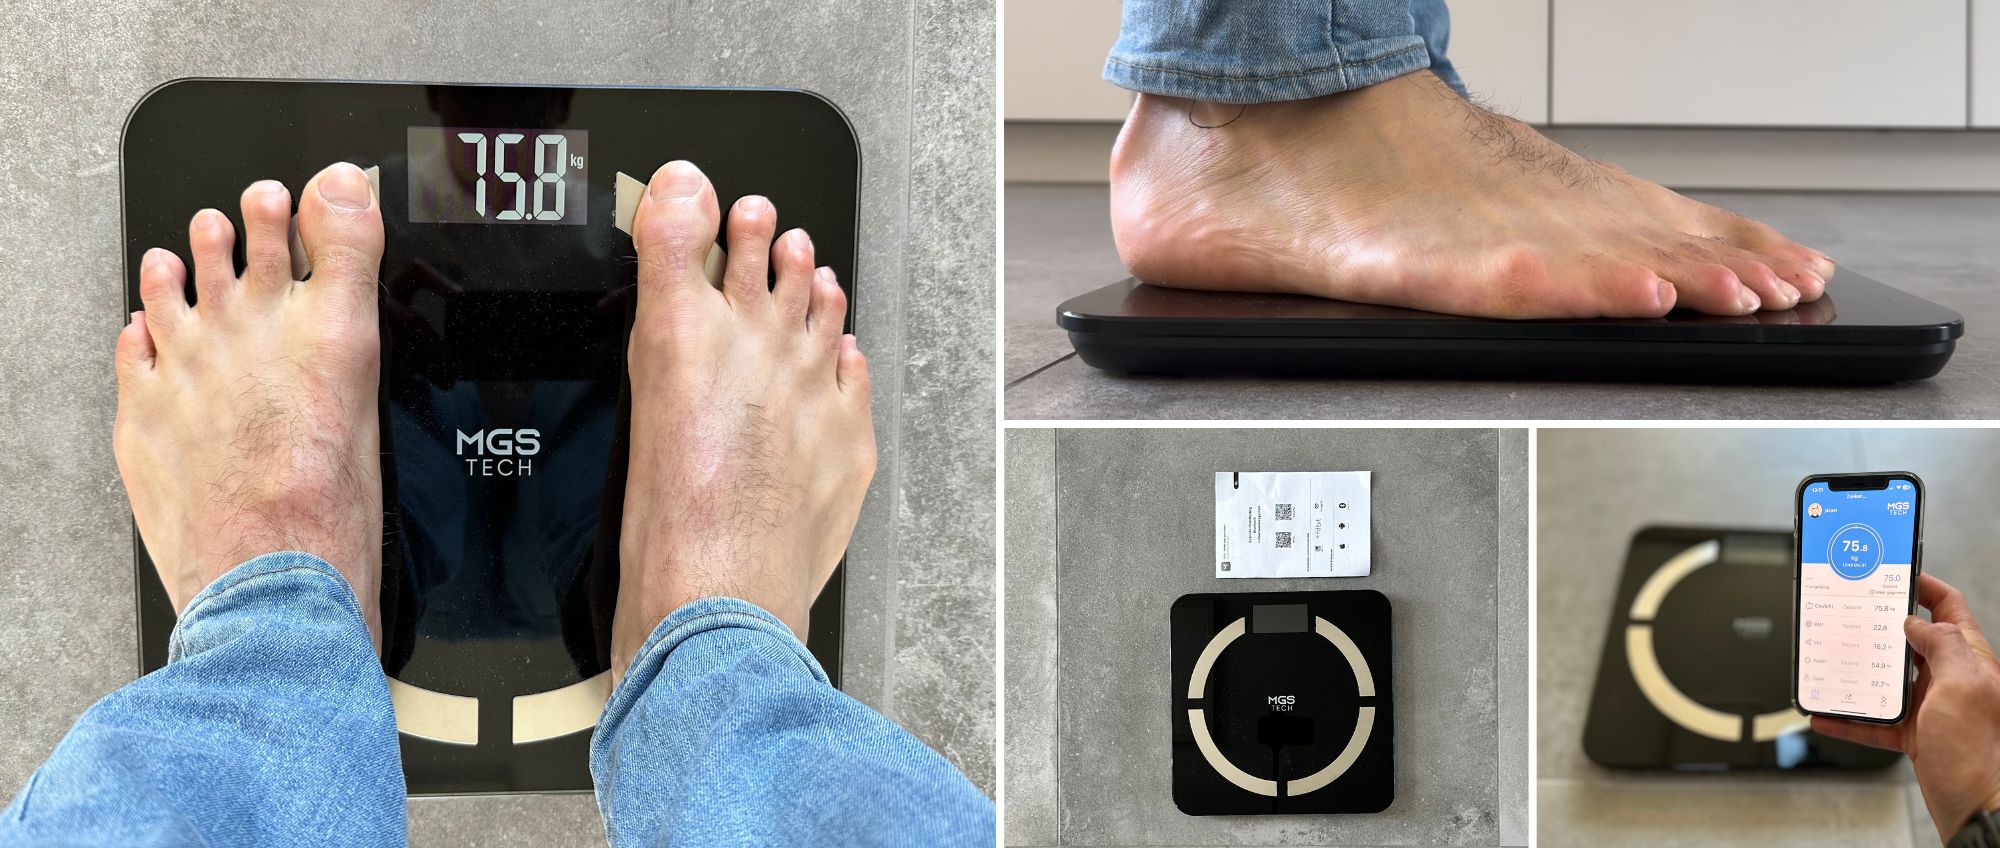 De voeten van een persoon worden weergegeven op een digitale weegschaal.